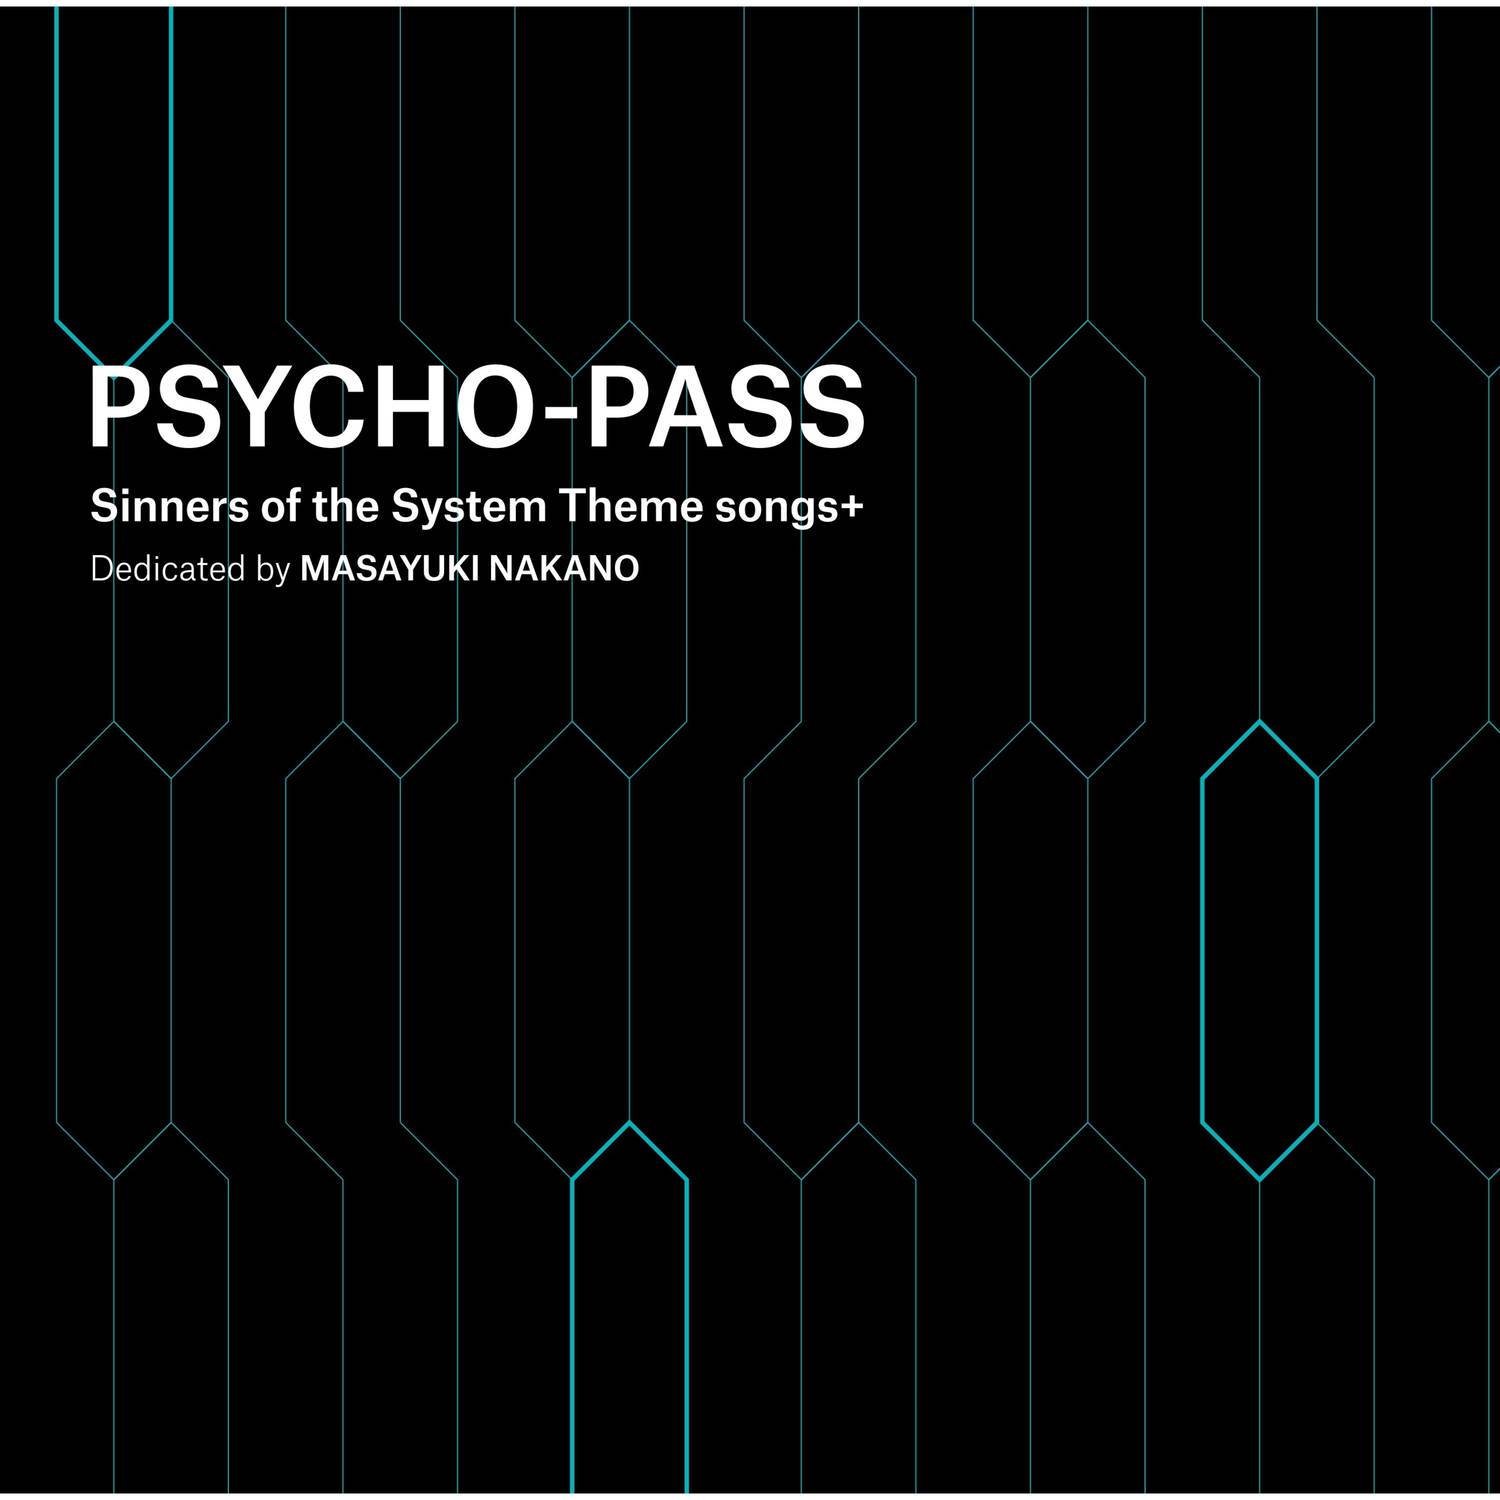 名前のない怪物 Remixed By 中野雅之 Boom Boom Satellites Psycho Pass Ss Case 3 Ed Ver Egoist 单曲 网易云音乐